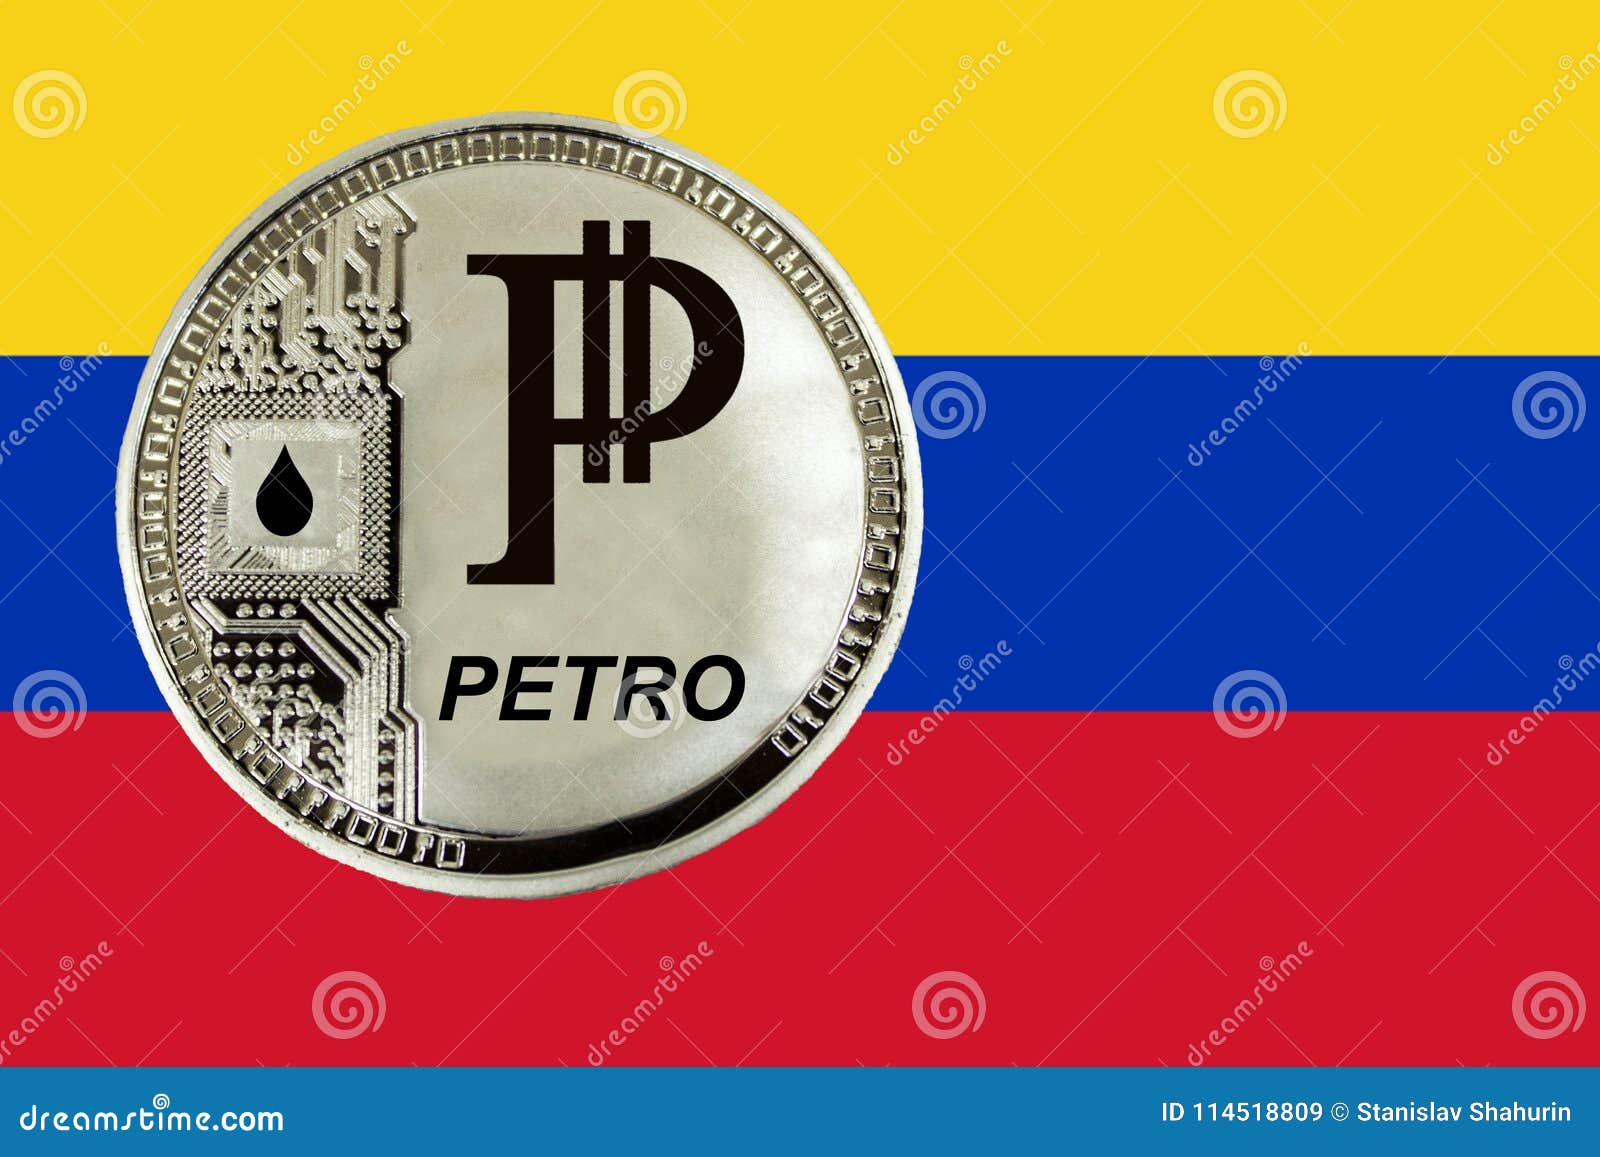 Venezuela crypto petro стоимость биткоина в долларах в 2022 году